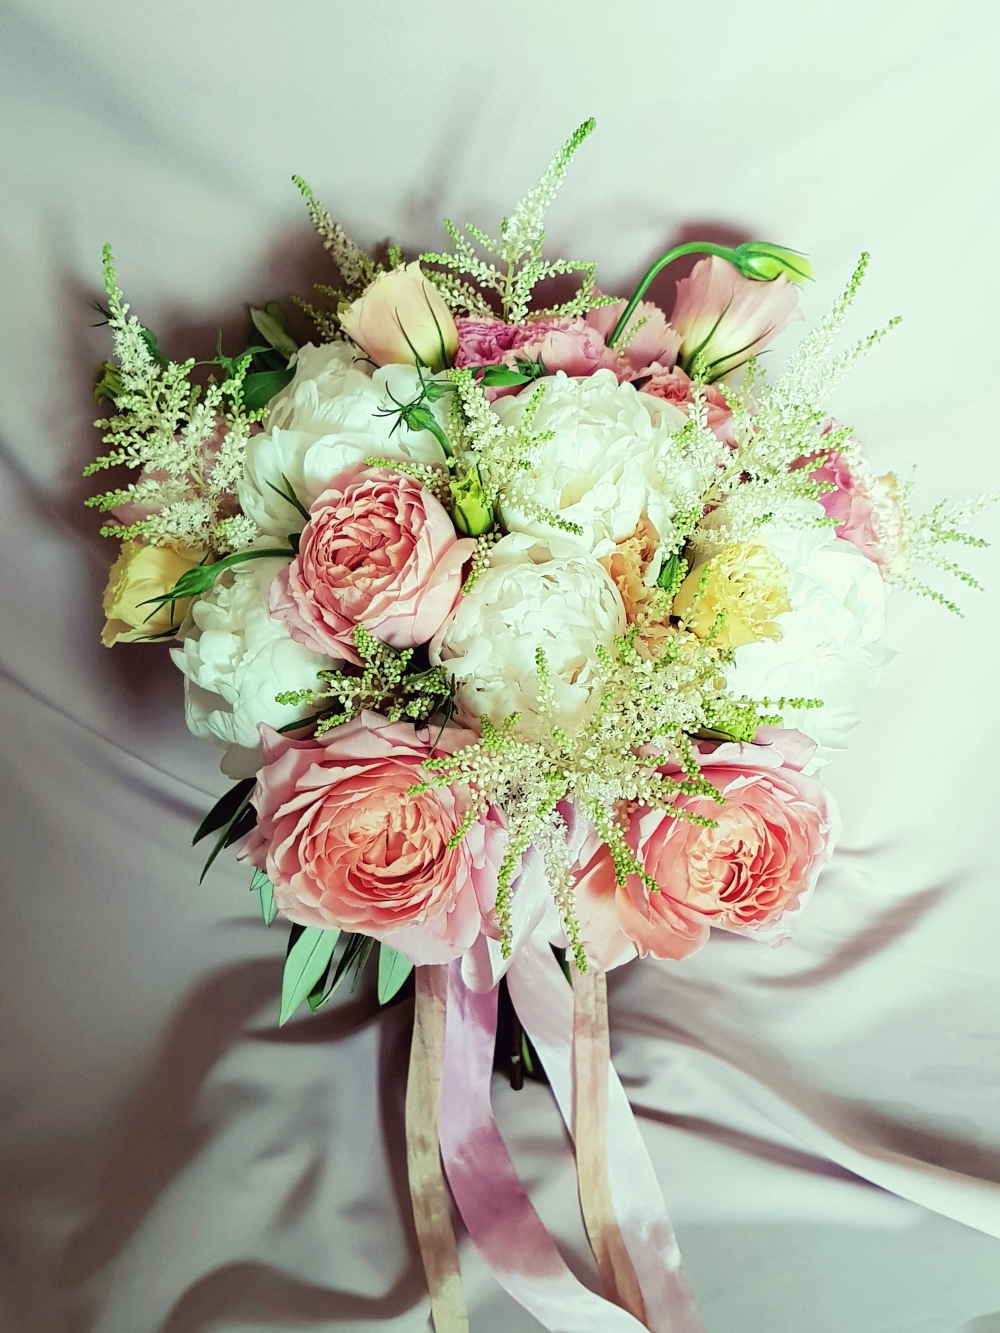 Букет невесты в розово-нюдовых тонах из шикарных пионов и пионовидной розы, с нежными лентами из натурального шелка, окрашенного вручную. Когда роскошь в гармонии со стилем)